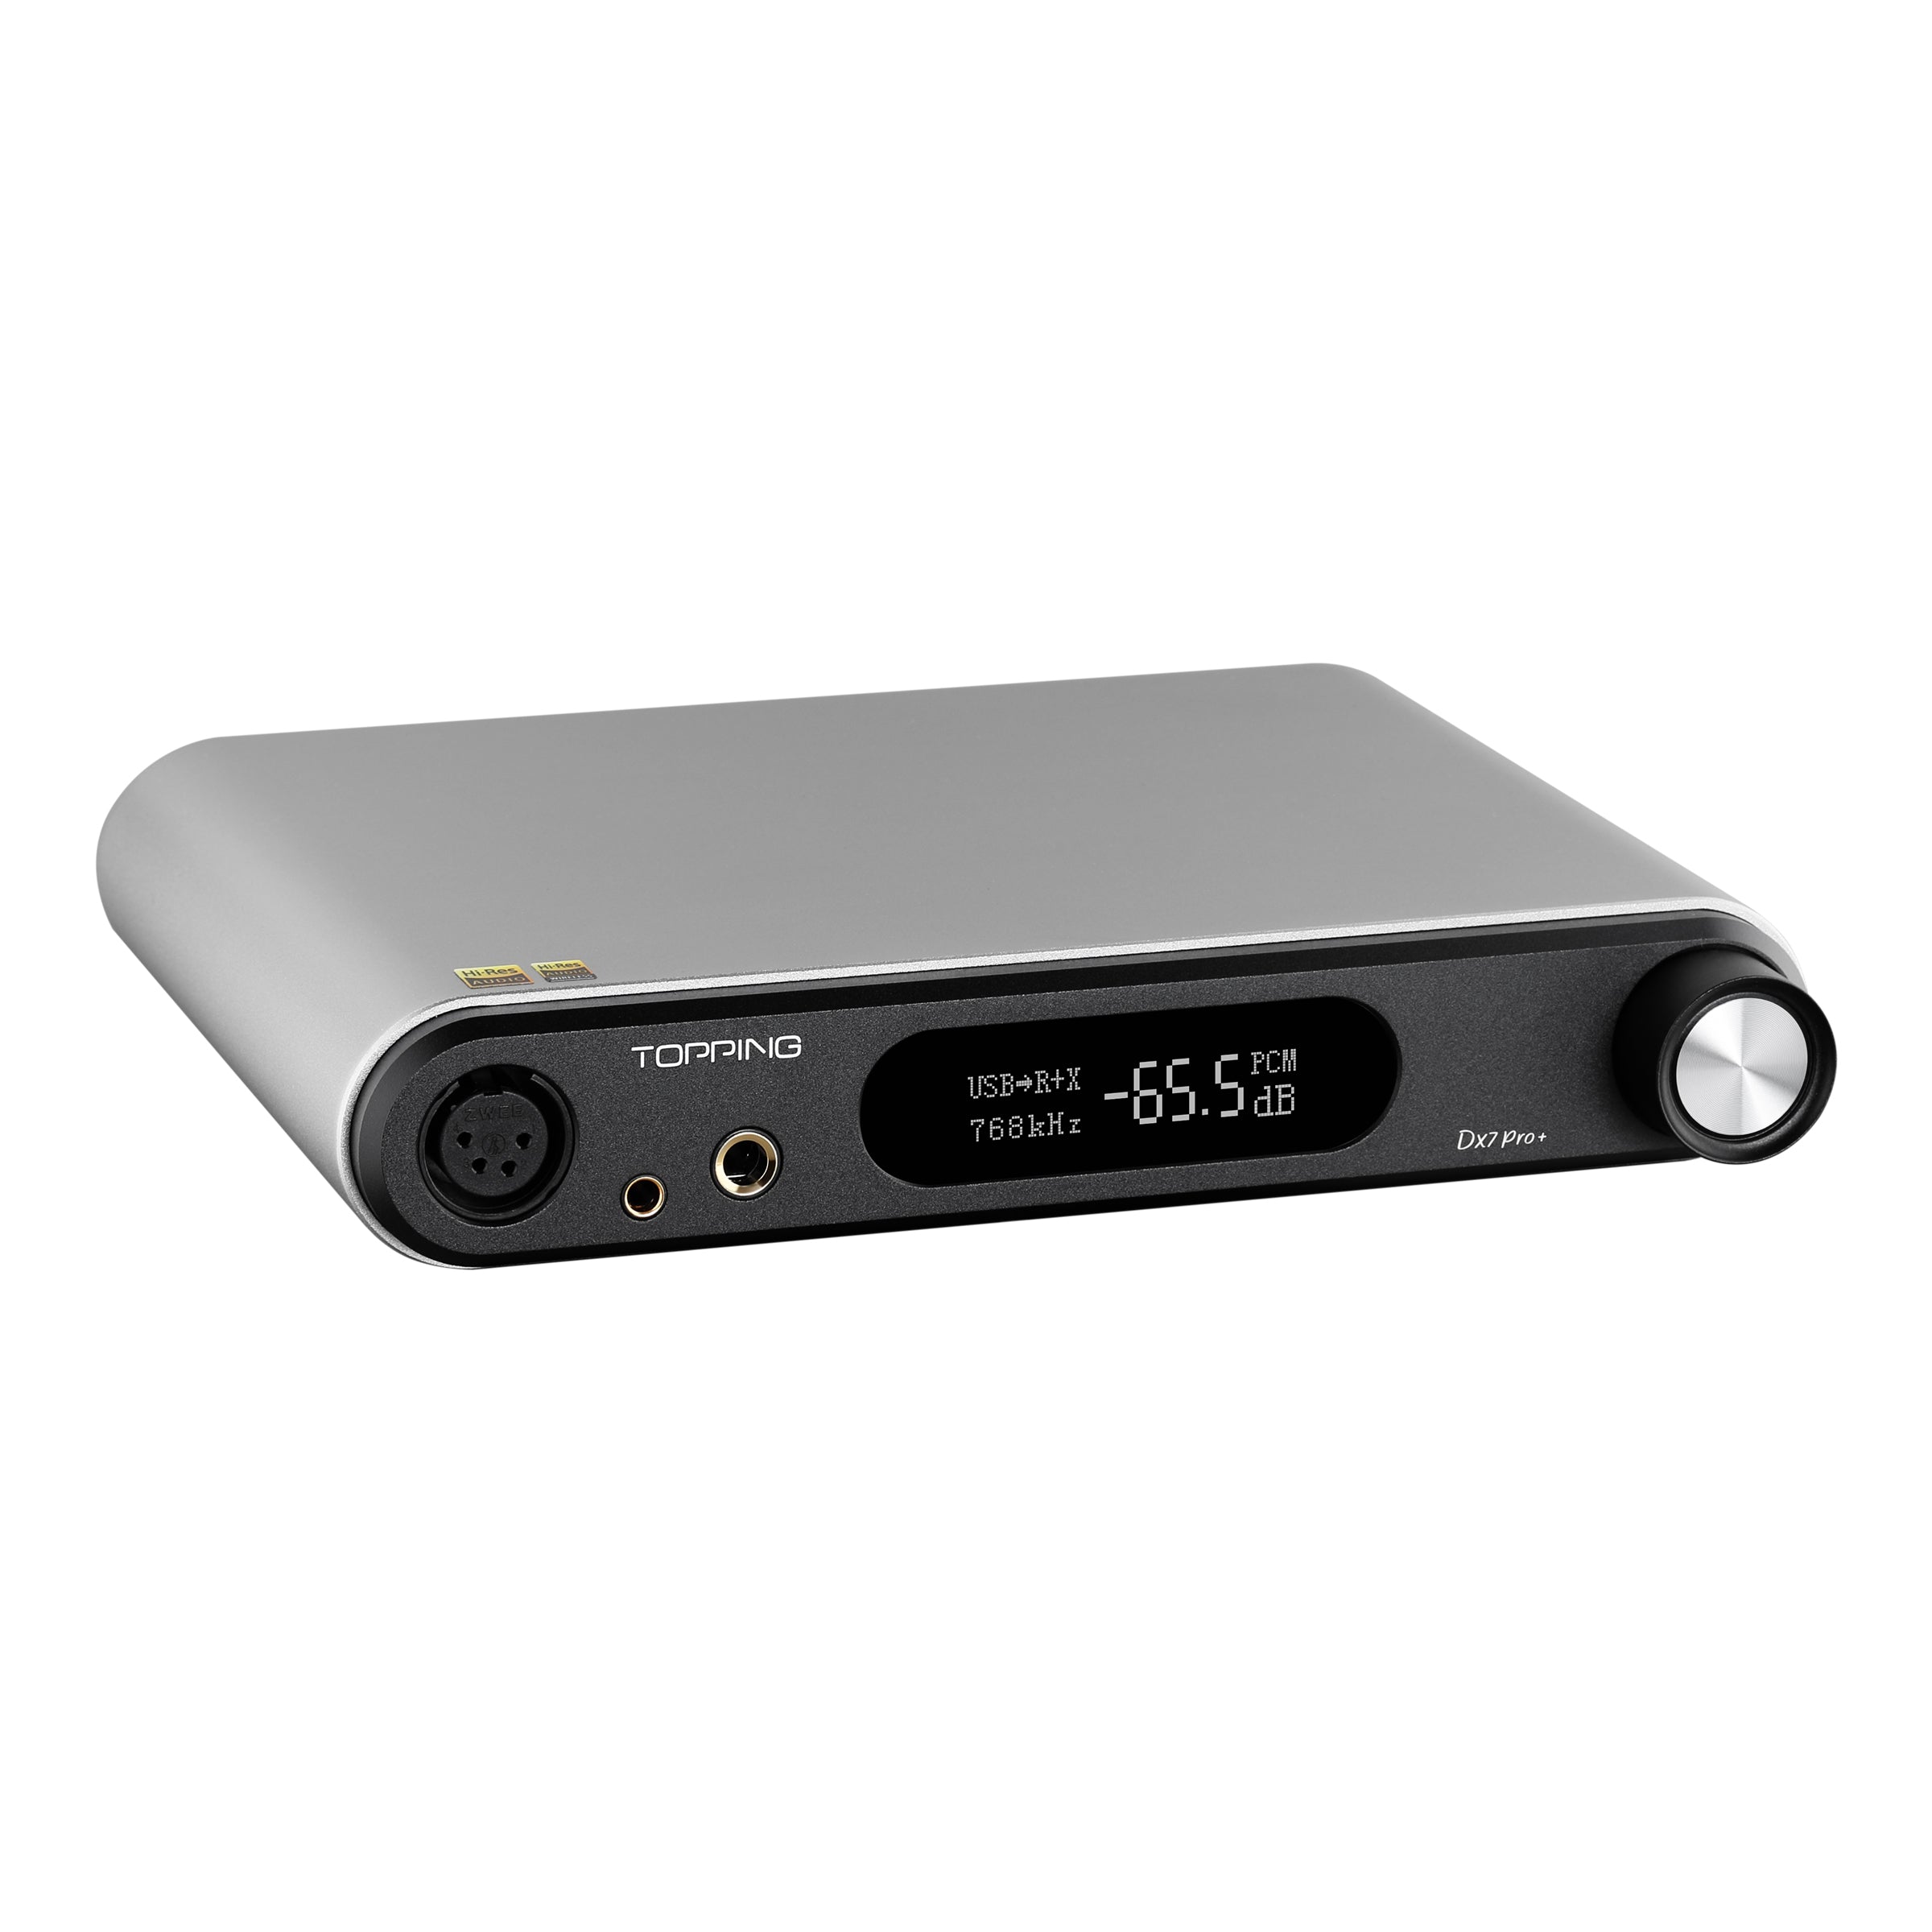 予約 ウィンフィールド銀座店TOPPING DX7 Pro 新登場USB DAC ヘッドホンアンプ 一体型 ES9038PRO チップ  NFCAヘッドホンアンプ内蔵